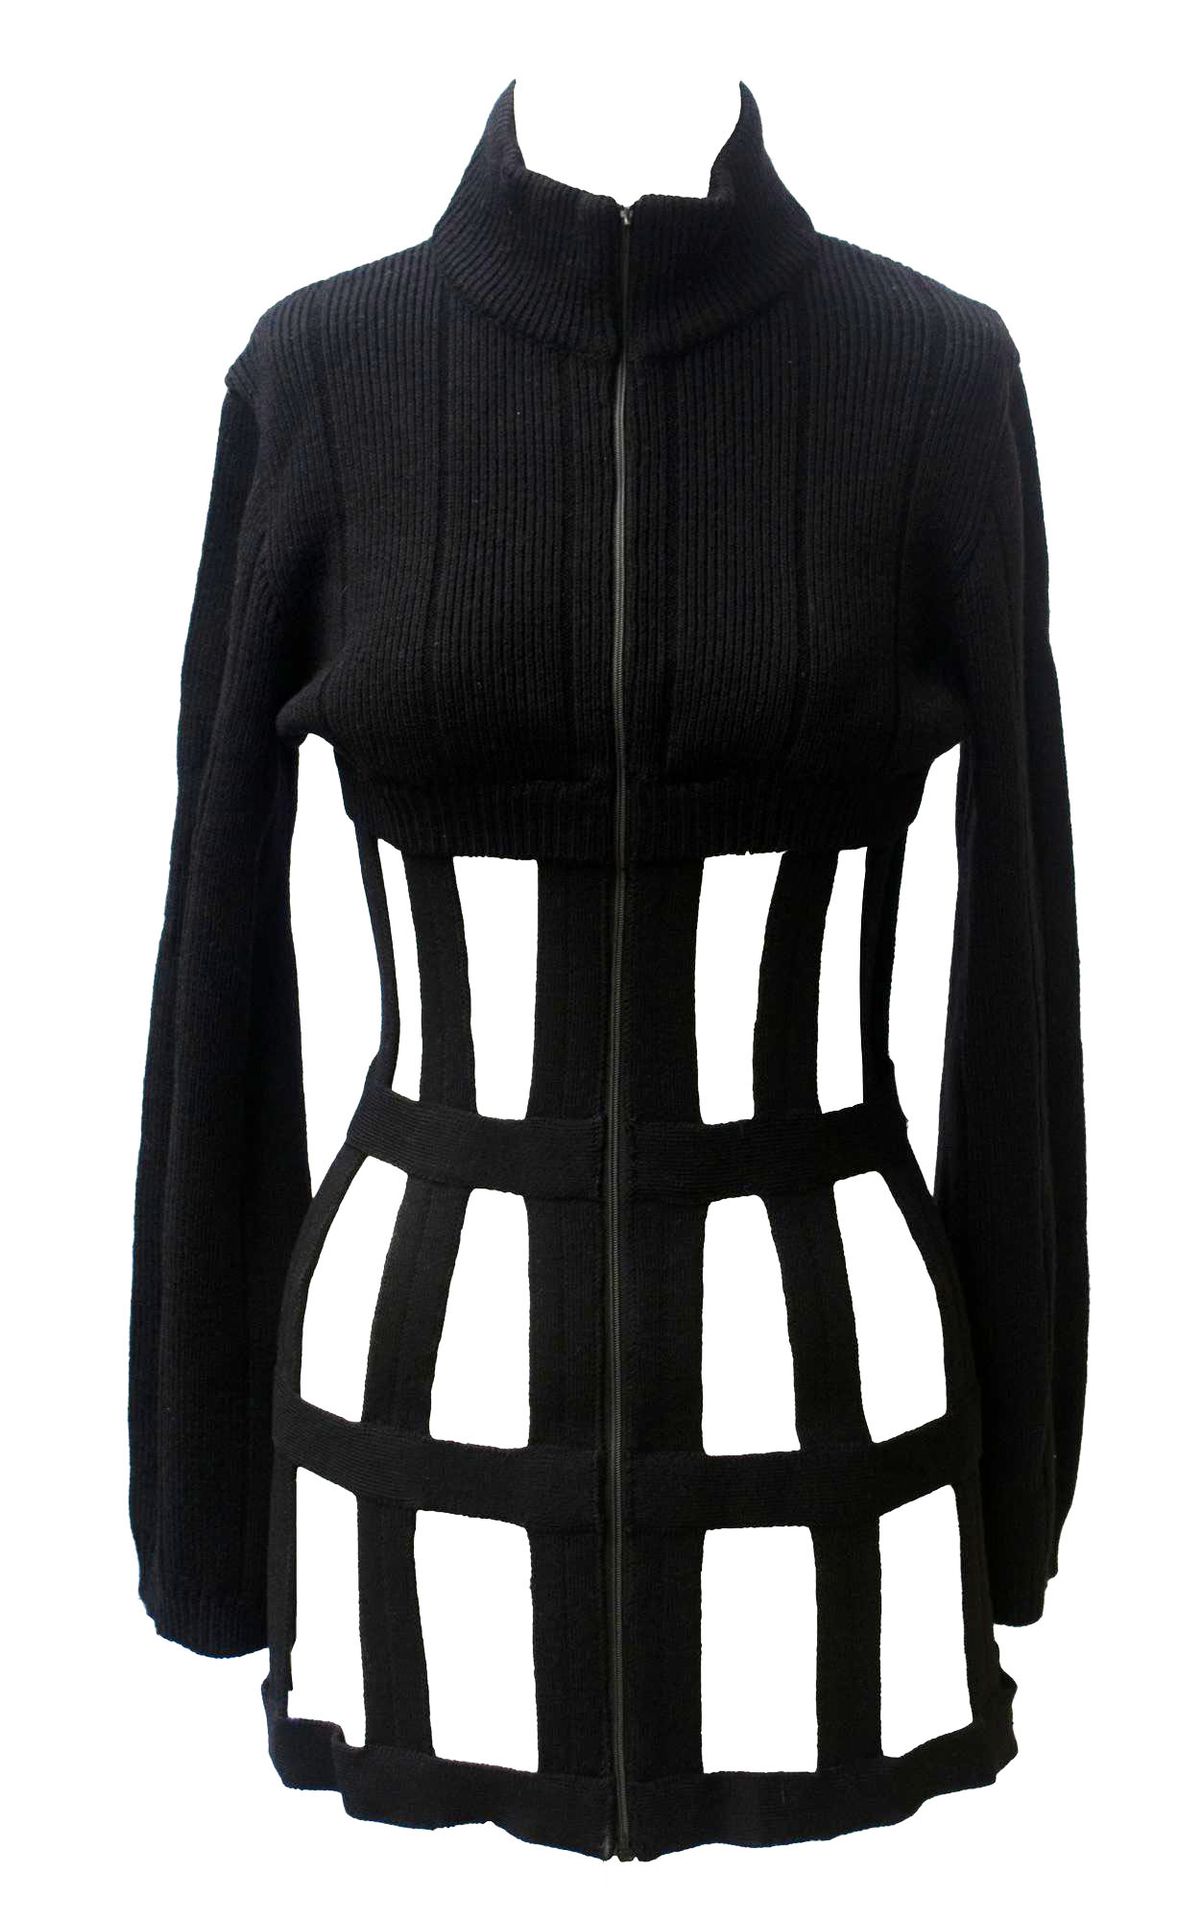 Null Jean Paul Gaultier

SUÉTER CAGE



Descripción:

Lana negra para este jerse&hellip;